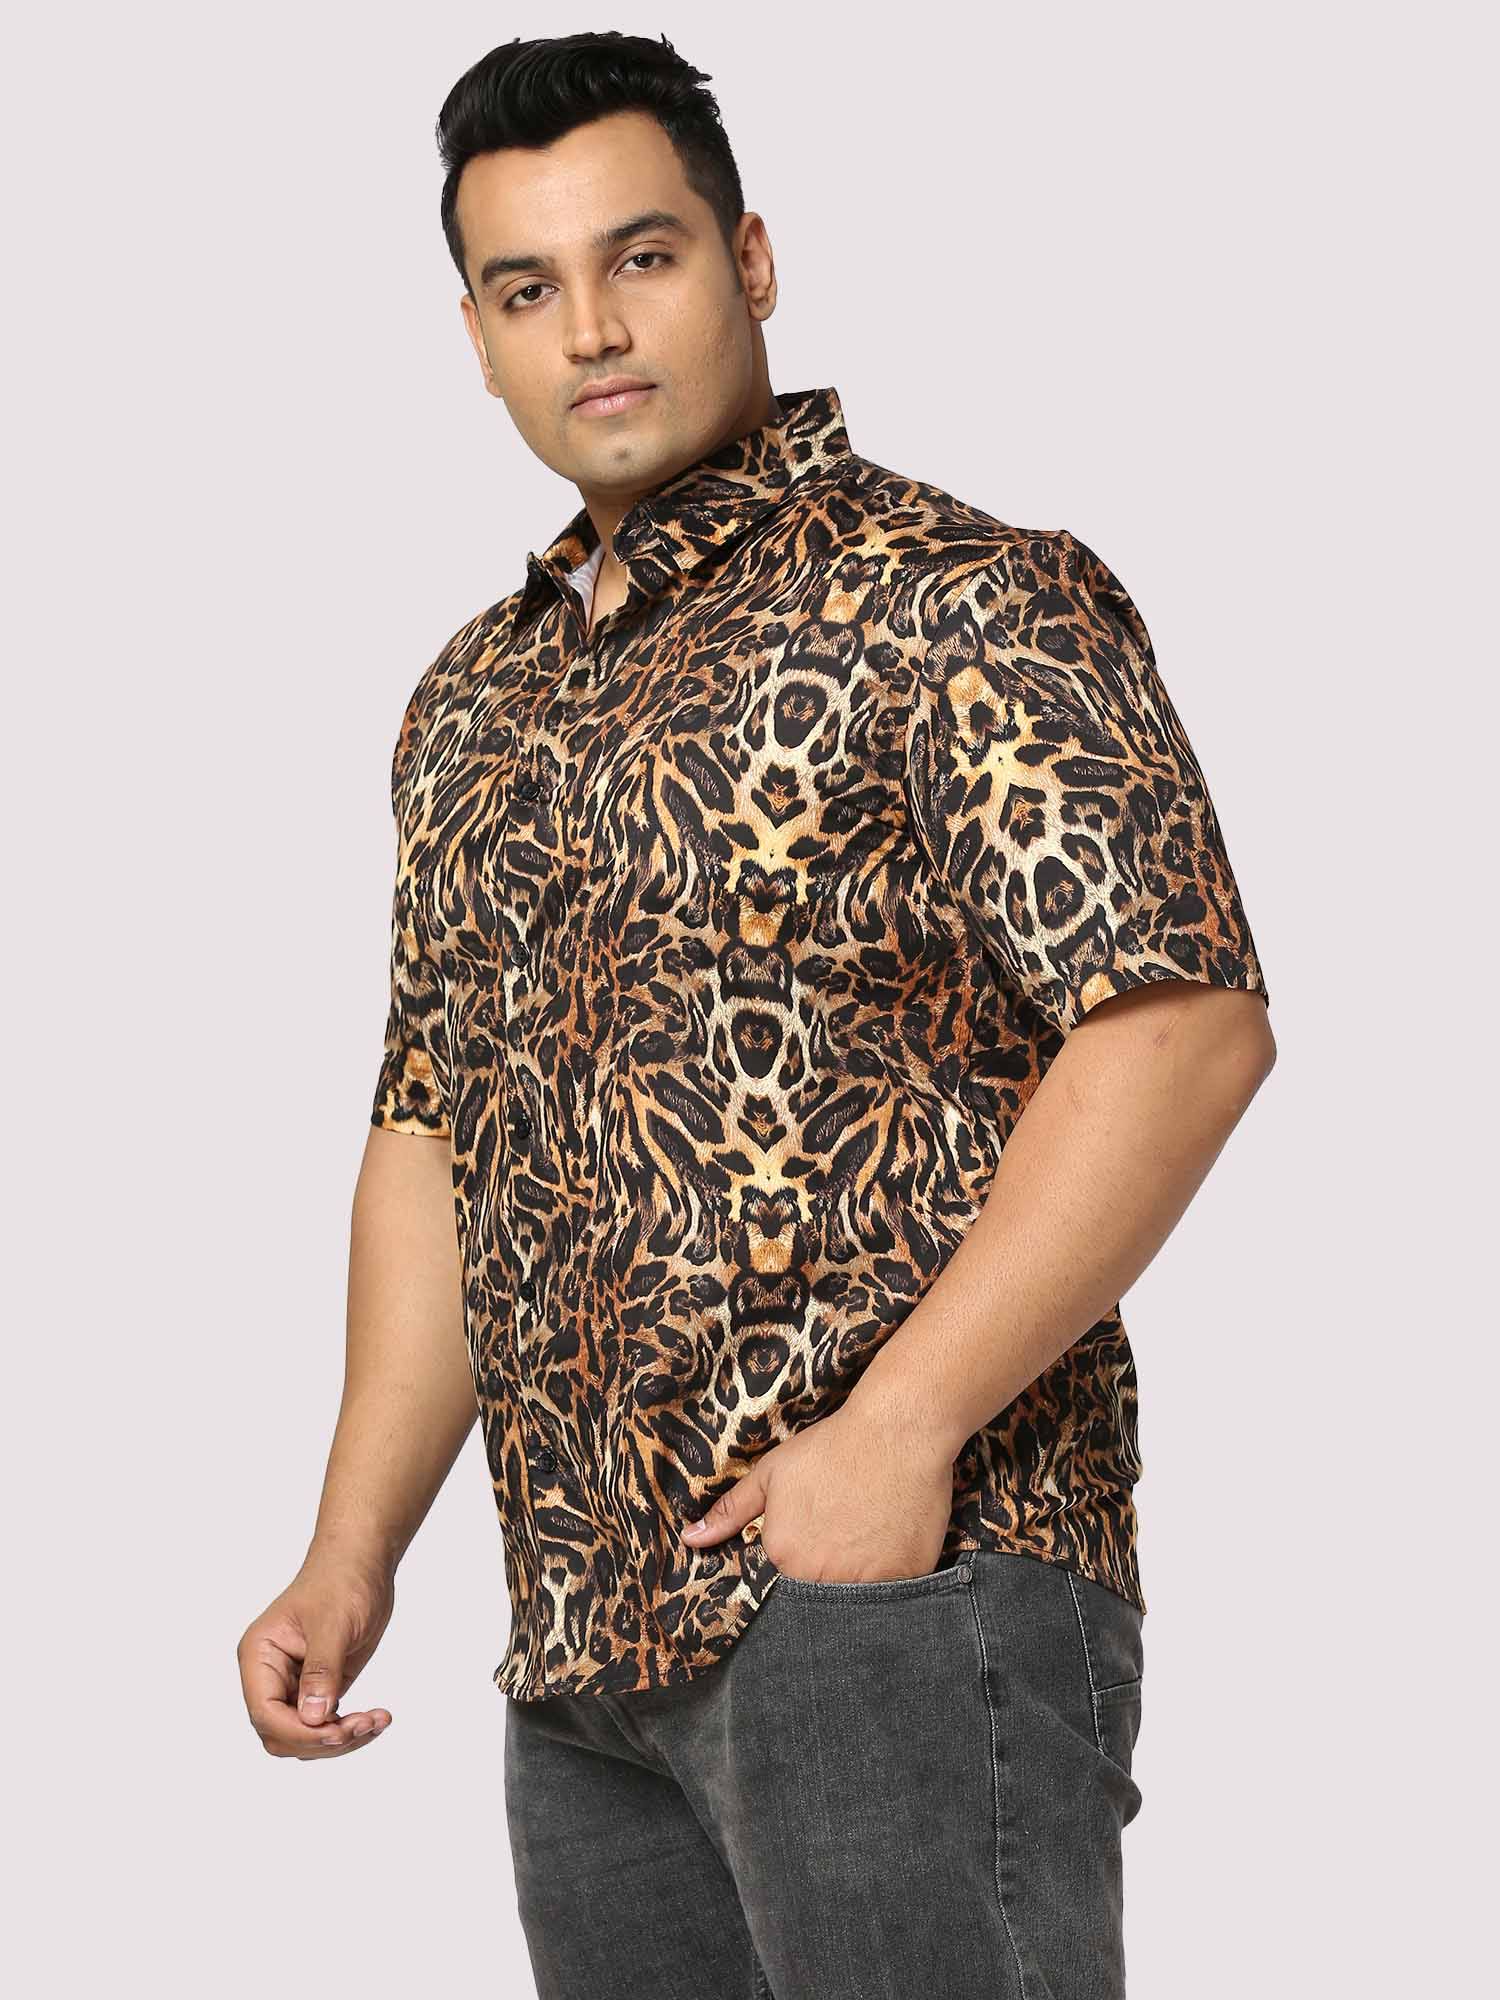 Guniaa Jaguar Digital Printed Half-Sleeves Shirt - Guniaa Fashions